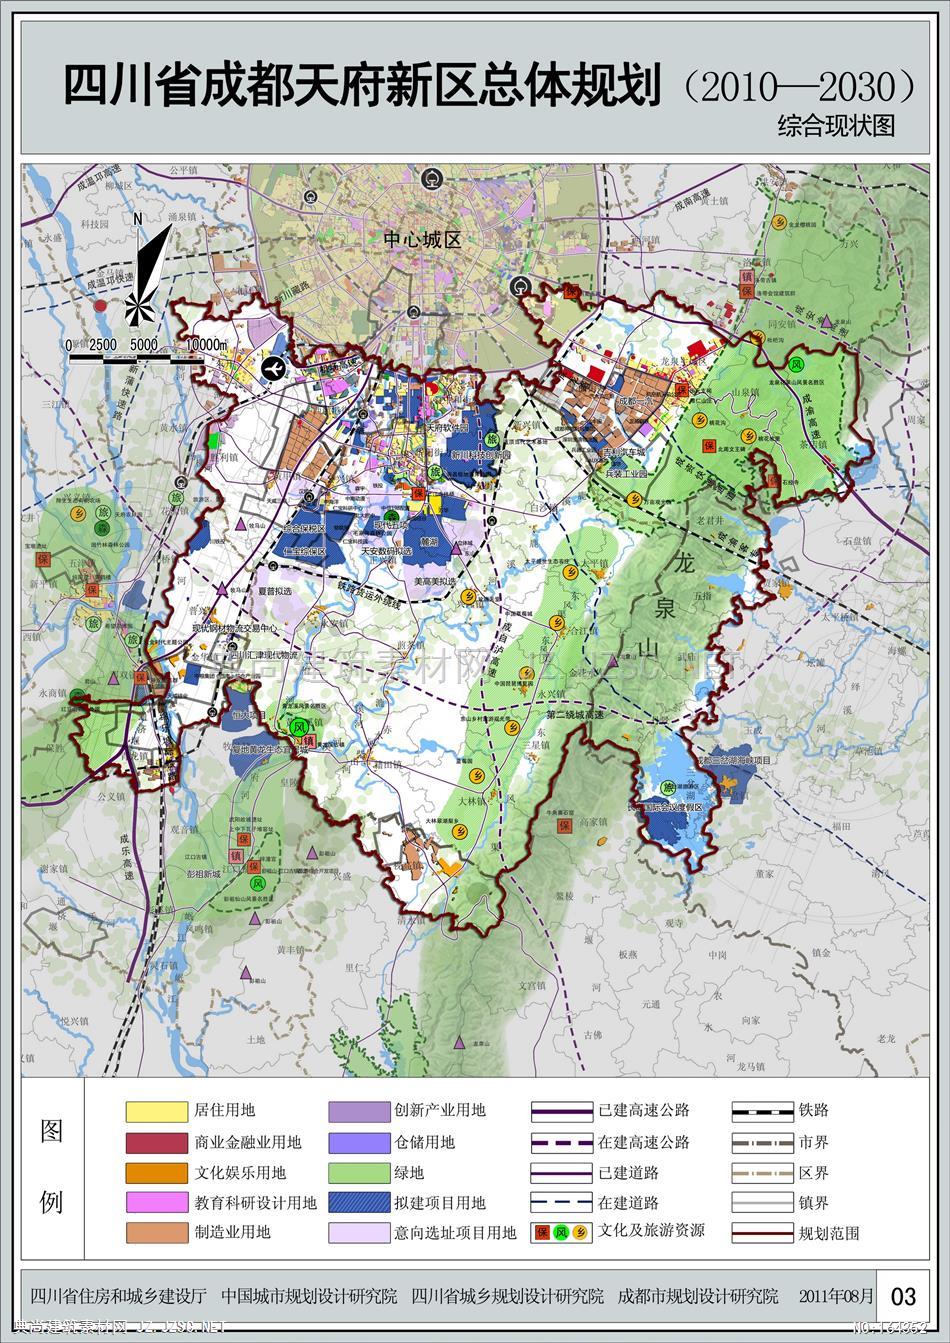 【中】成都天府新区总体规划2010-2030 城市规划方案文本 控制性详细